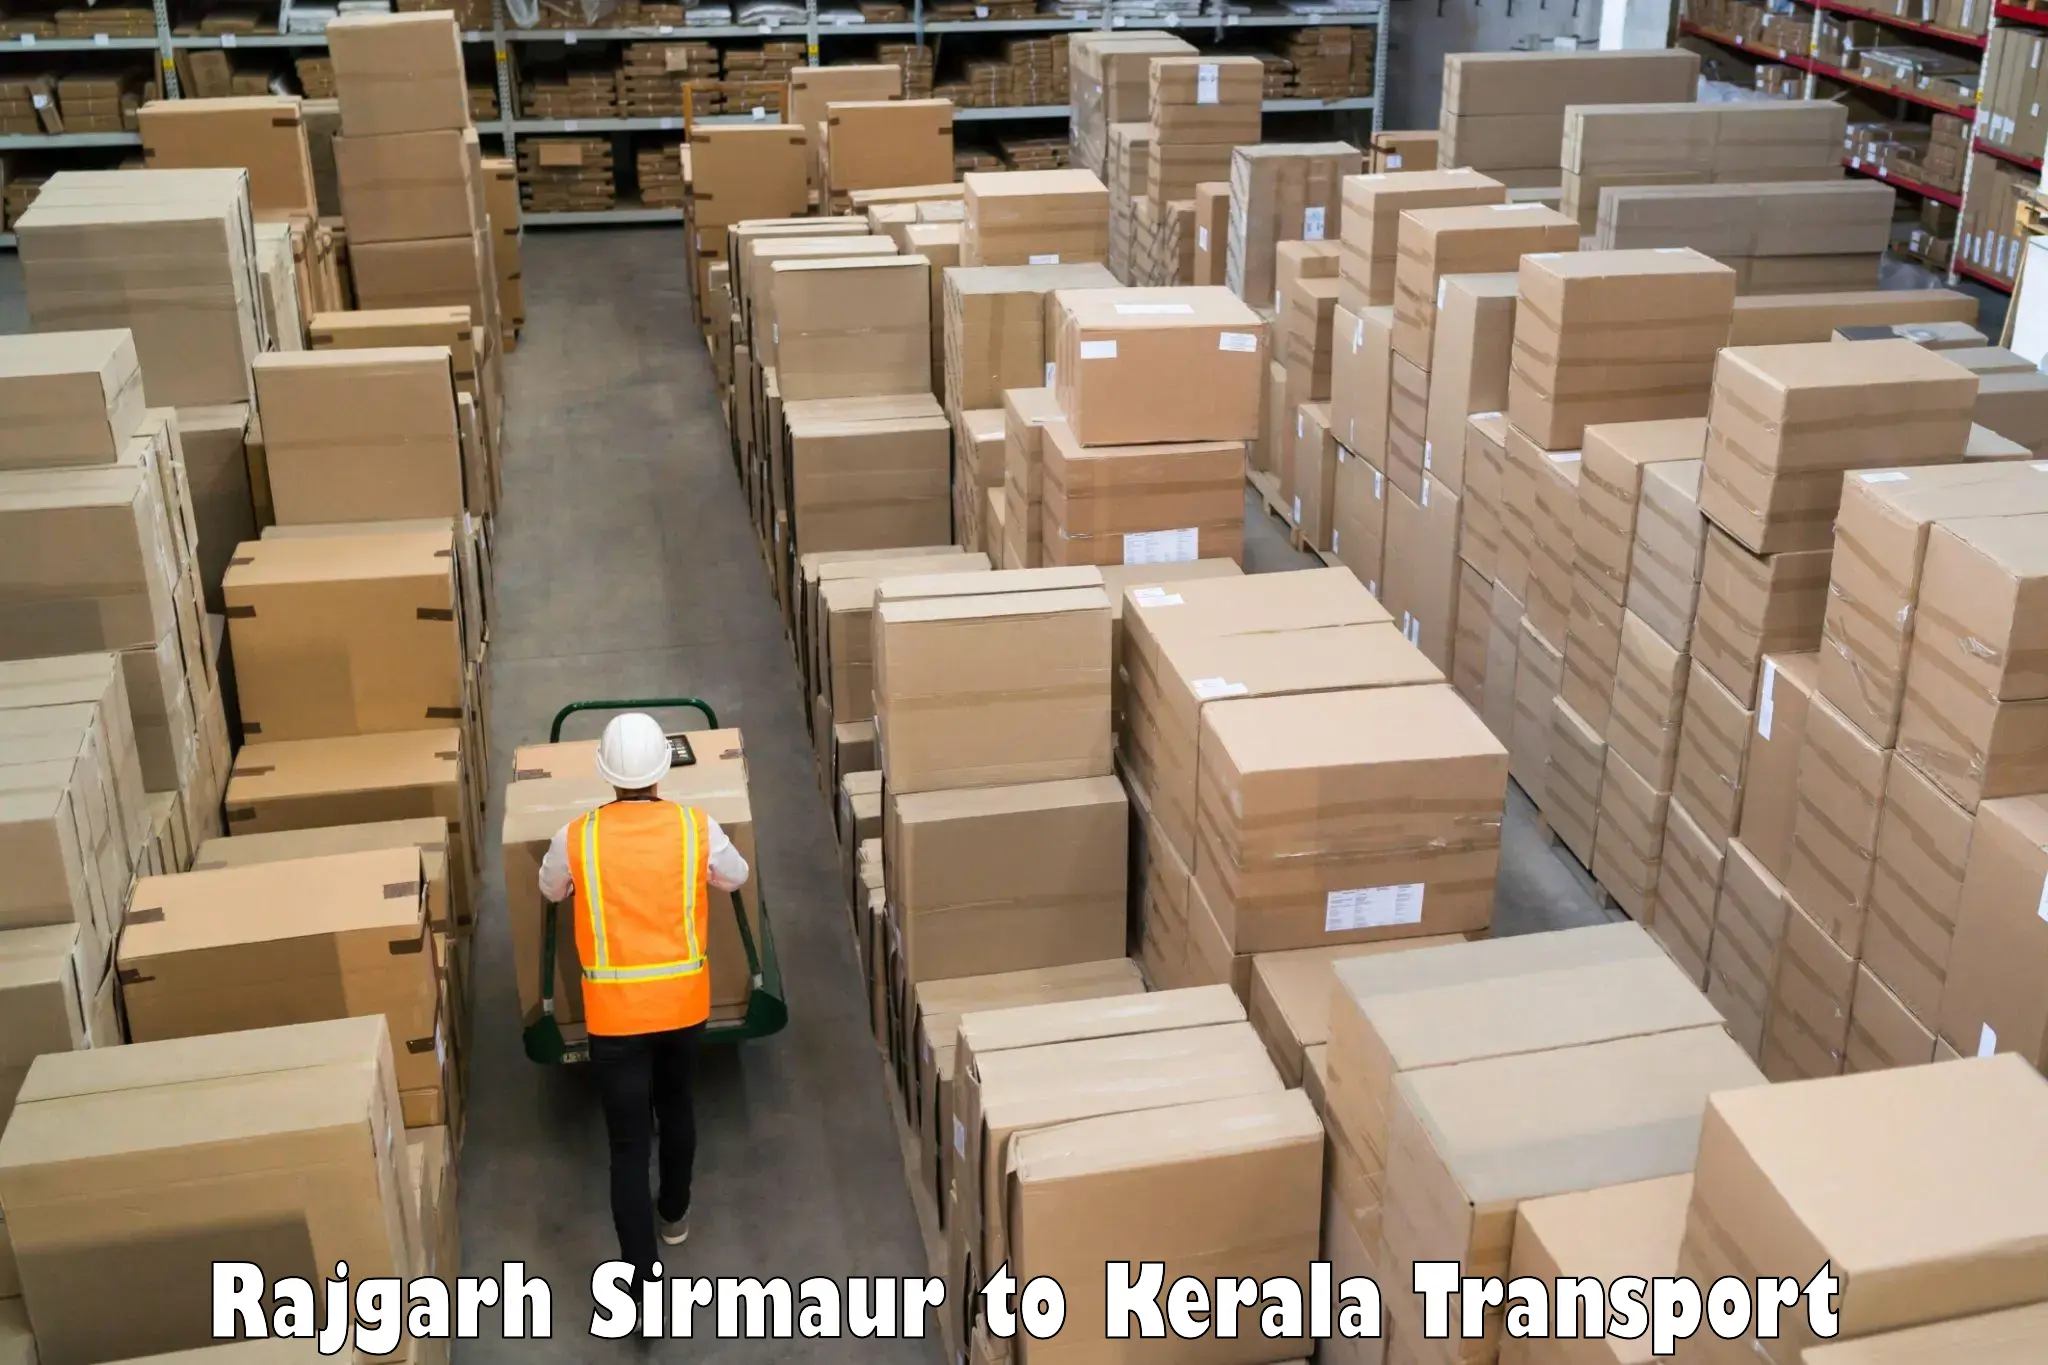 Shipping partner Rajgarh Sirmaur to Mundakayam